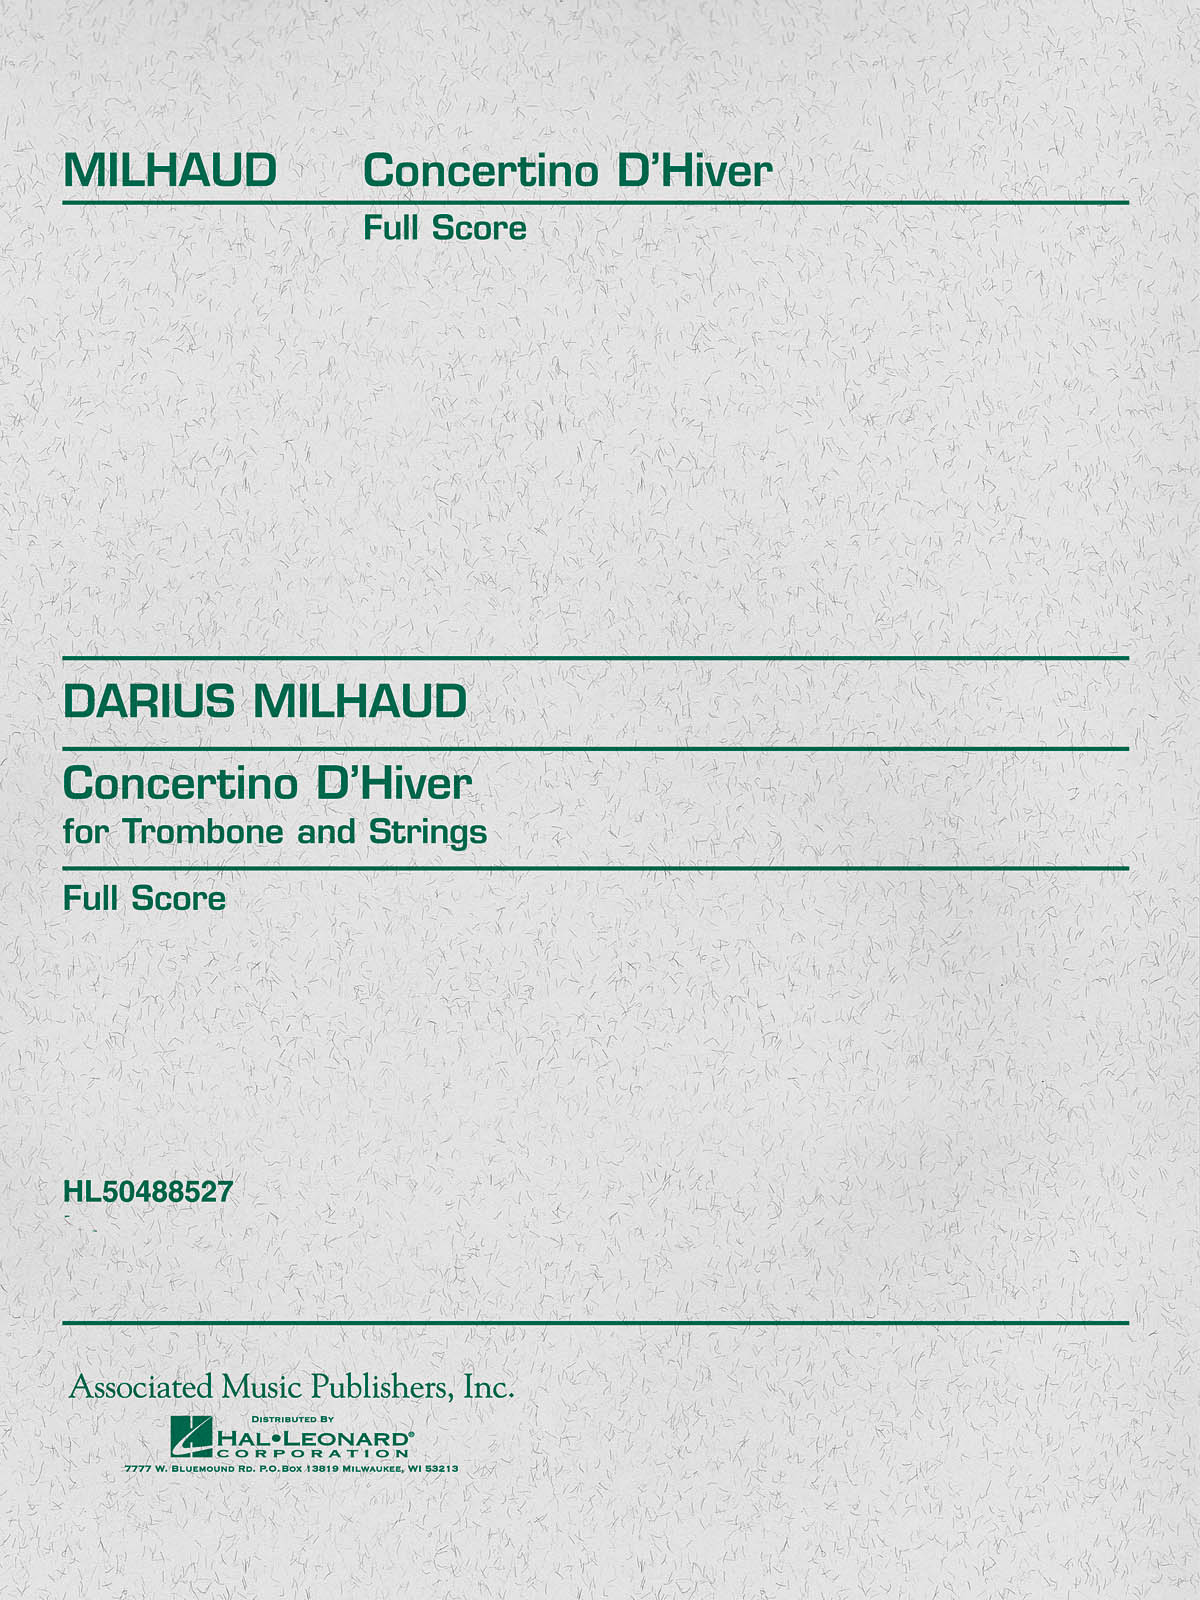 Darius Milhaud: Concertino d'Hiver